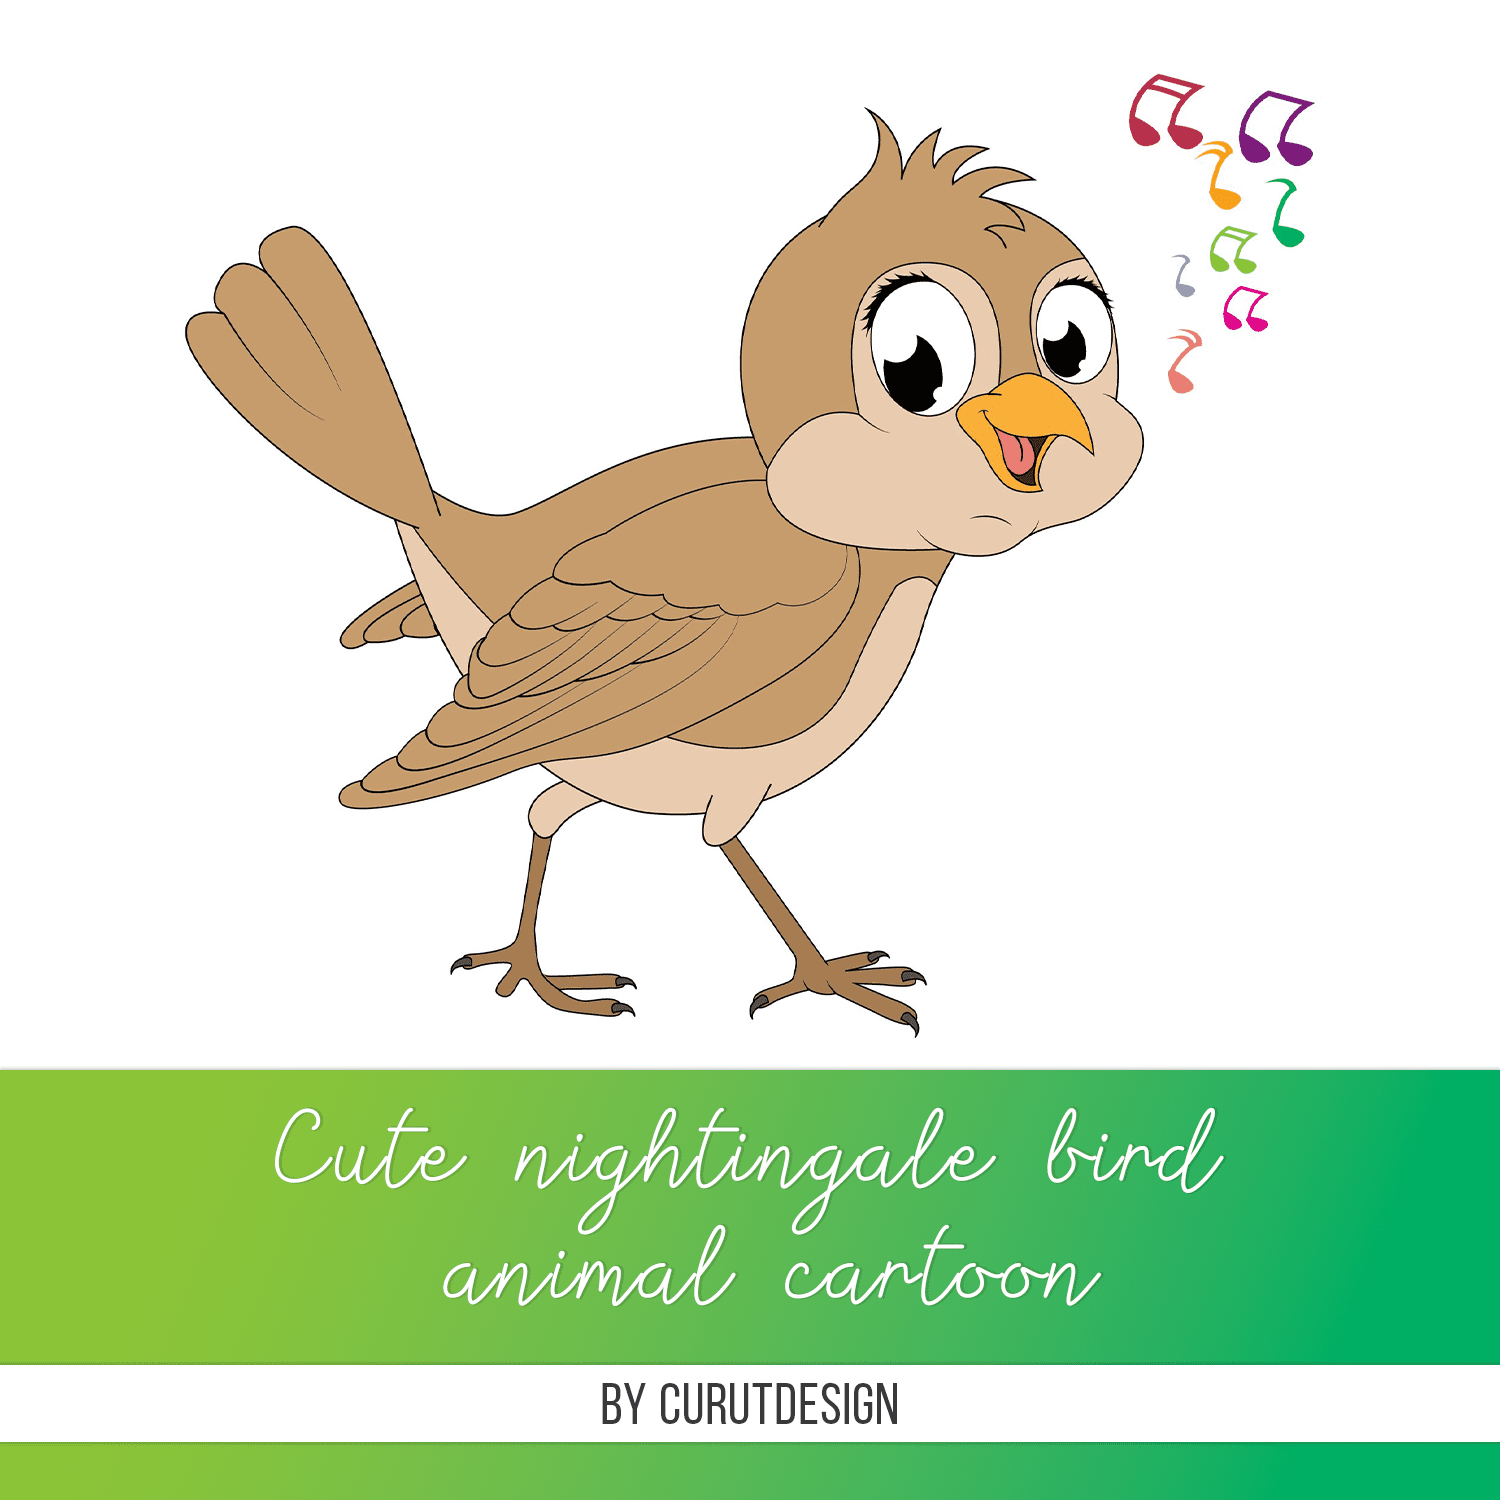 cute nightingale bird animal cartoon cover.